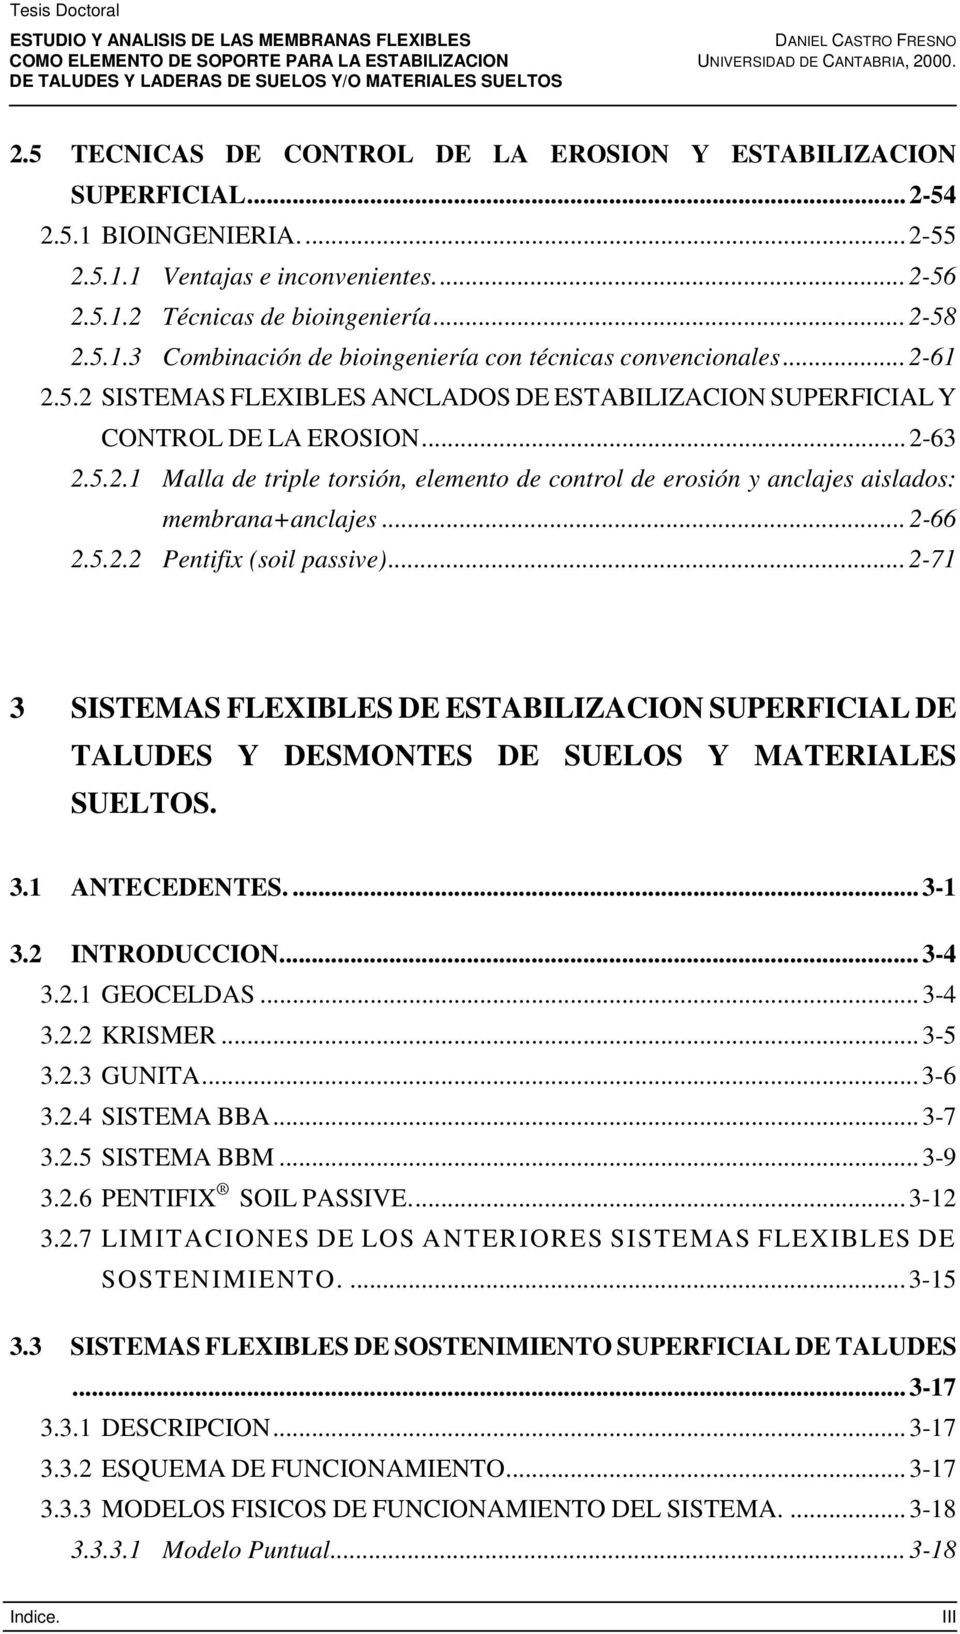 .. 2-66 2.5.2.2 Pentifix (soil passive)... 2-71 3 SISTEMAS FLEXIBLES DE ESTABILIZACION SUPERFICIAL DE TALUDES Y DESMONTES DE SUELOS Y MATERIALES SUELTOS. 3.1 ANTECEDENTES.... 3-1 3.2 INTRODUCCION.